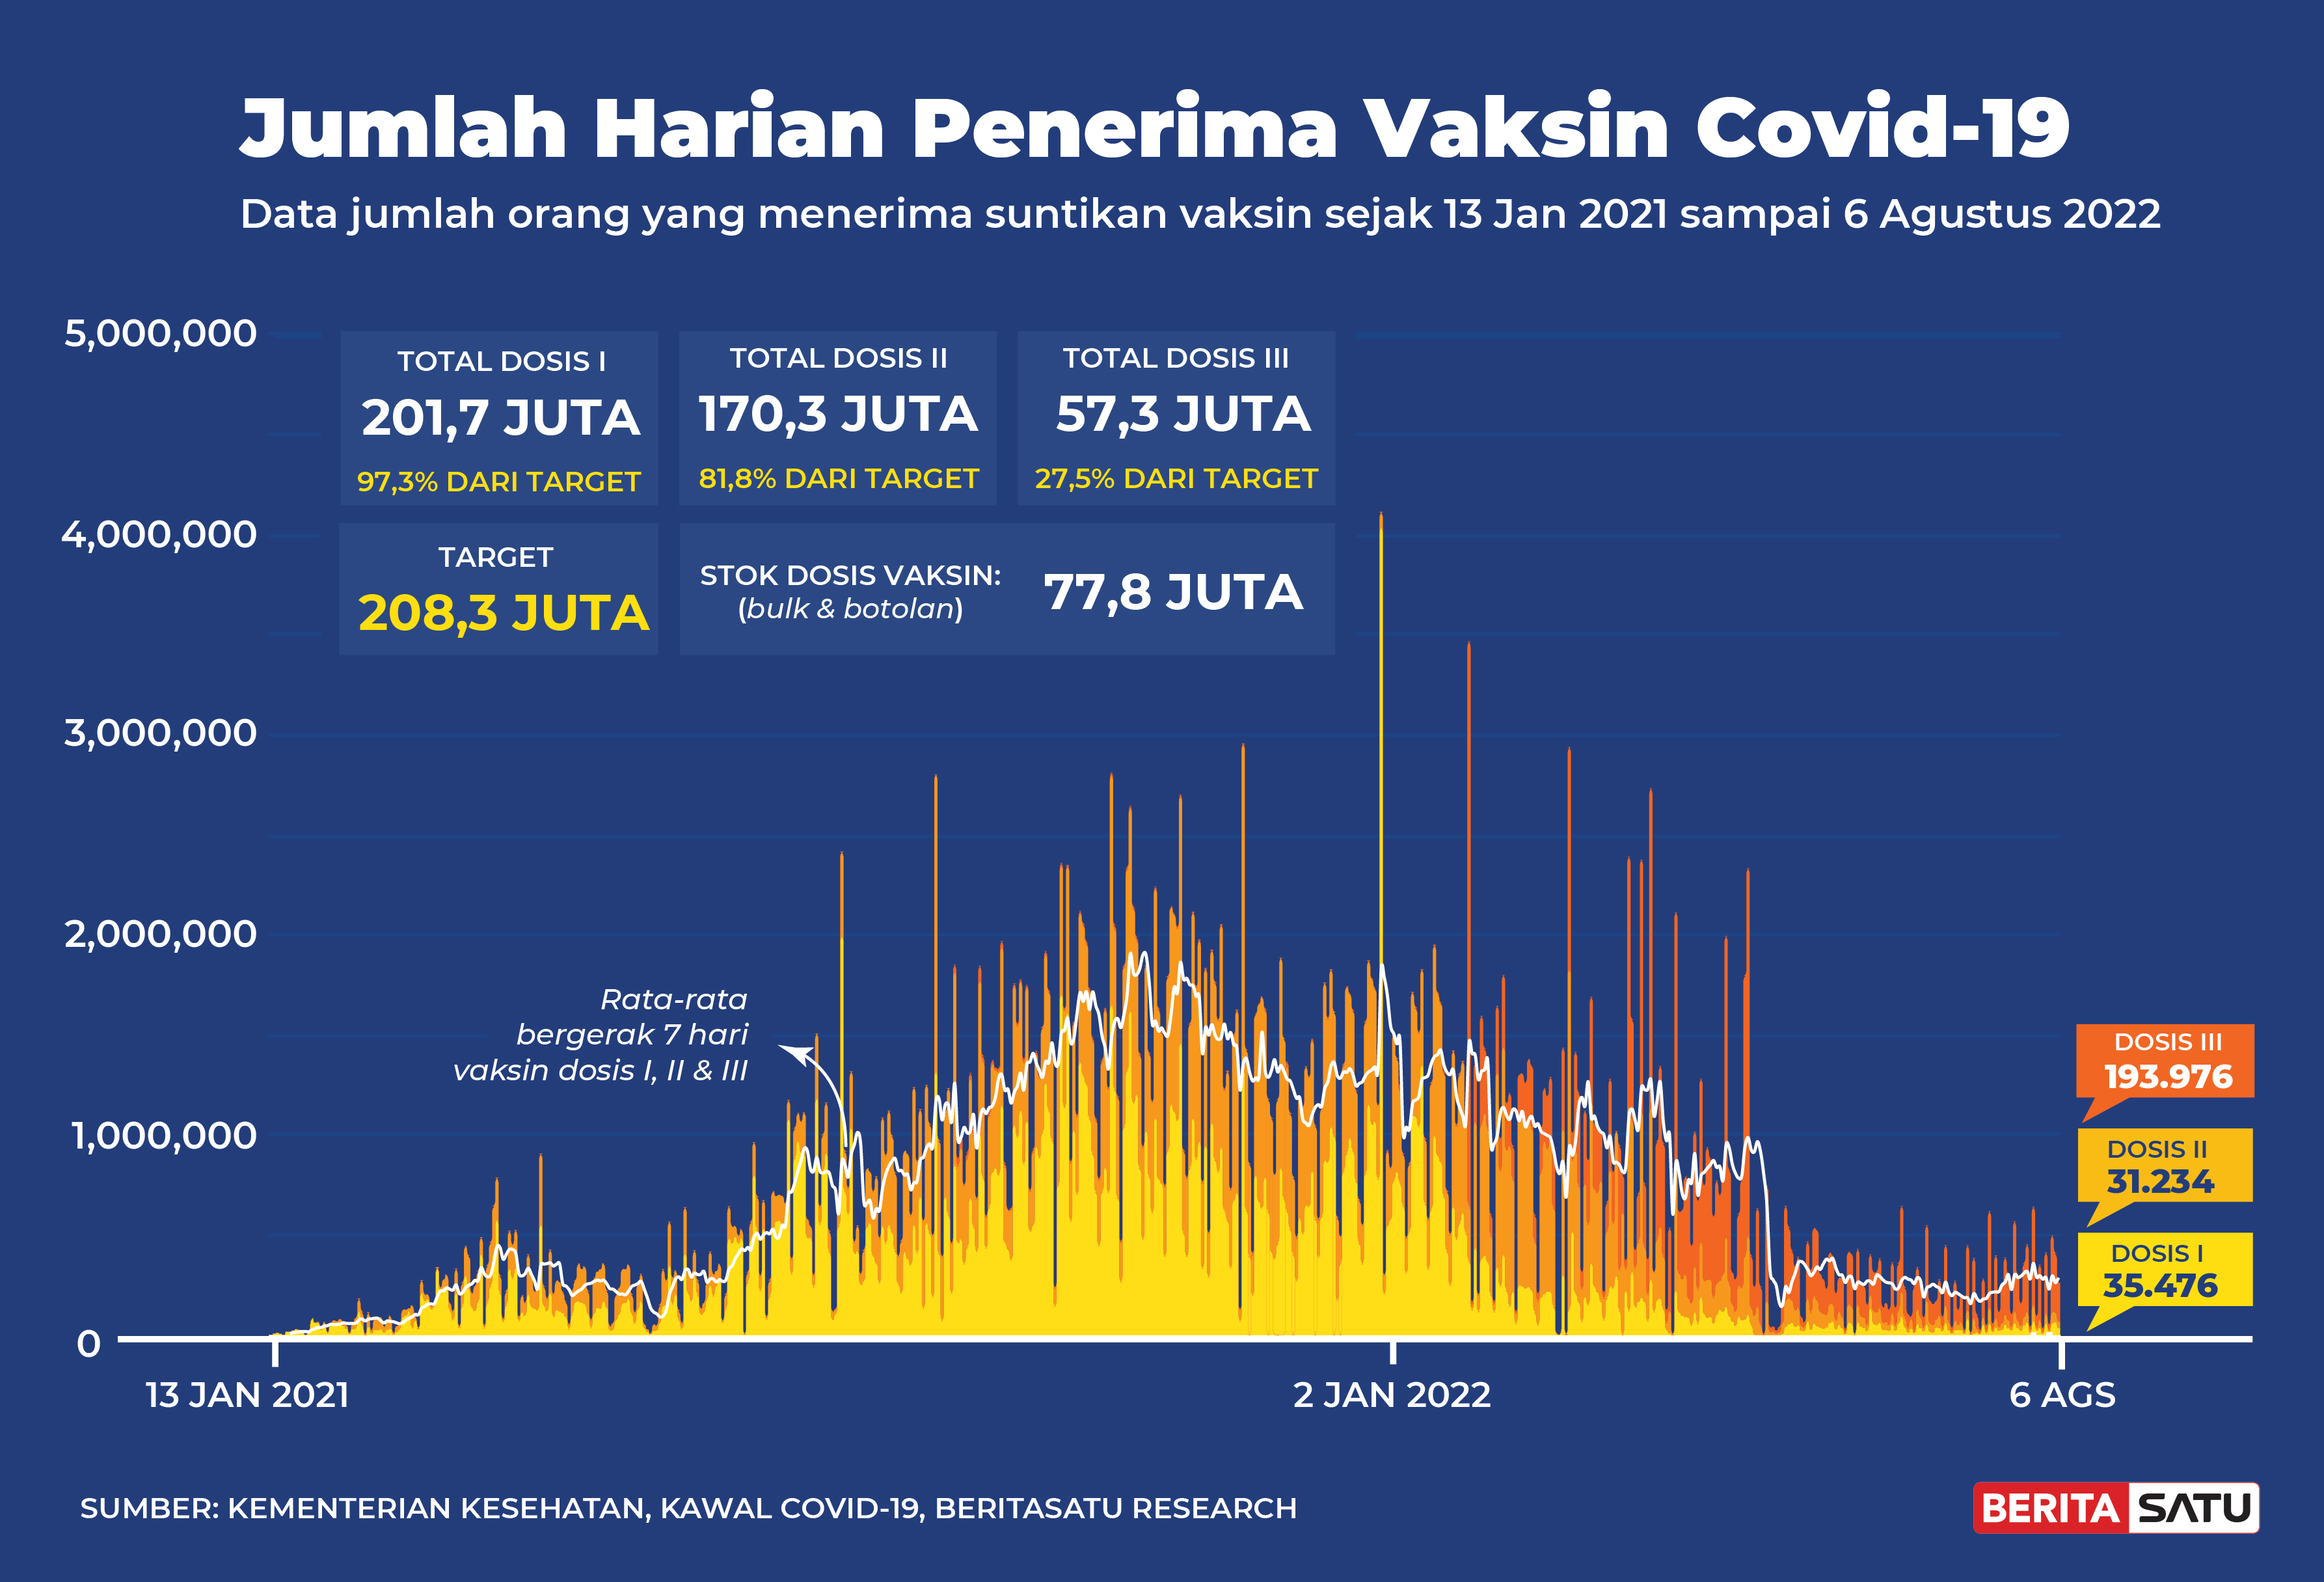 Penerima Vaksin Covid-19 di Indonesia sampai 6 Agustus 2022